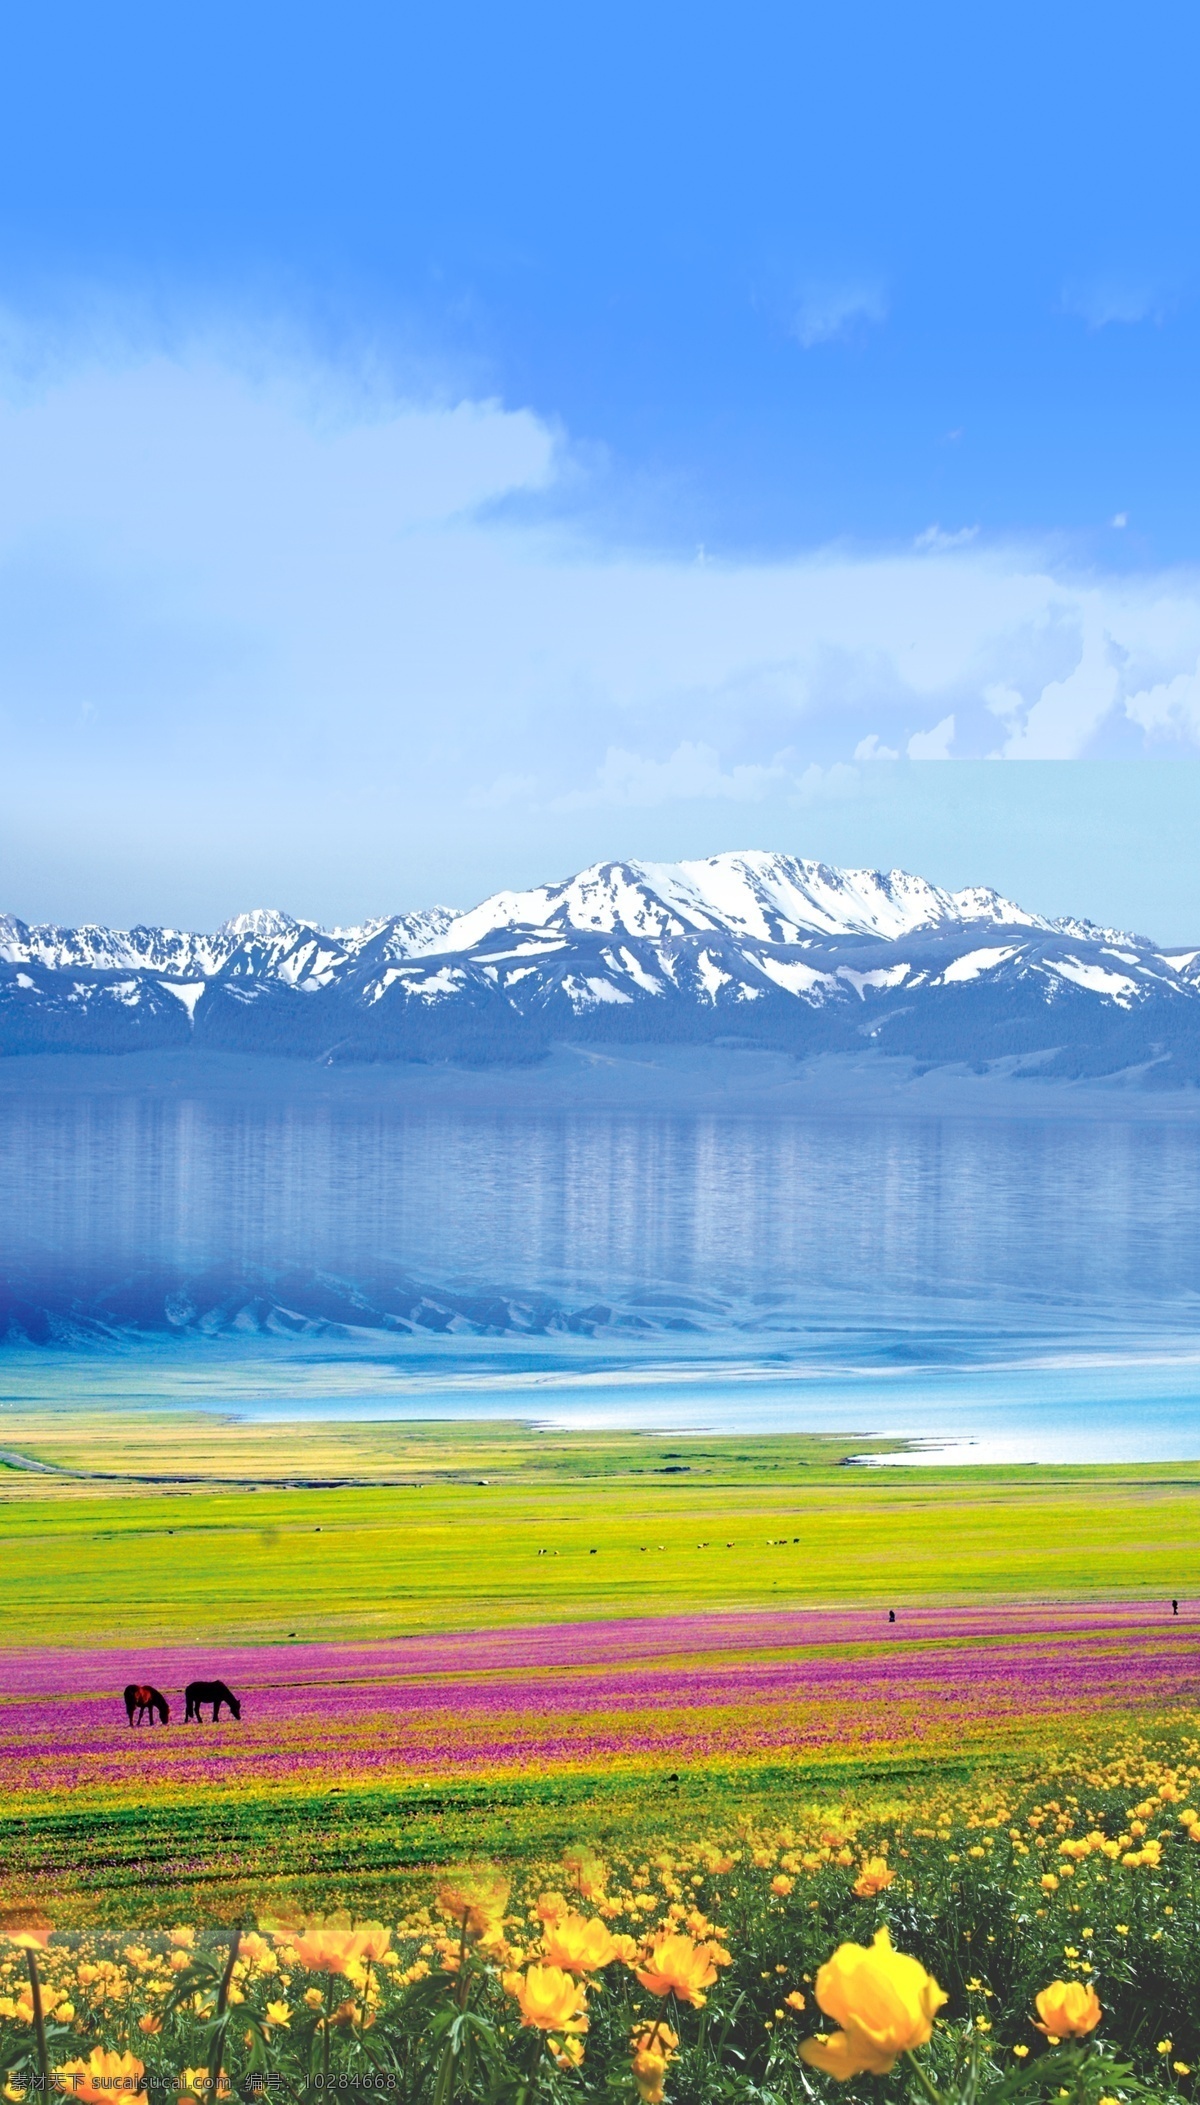 雪山草地 新疆风景 新疆风 景雪山 草原 野花 风景 自然景观 自然风光